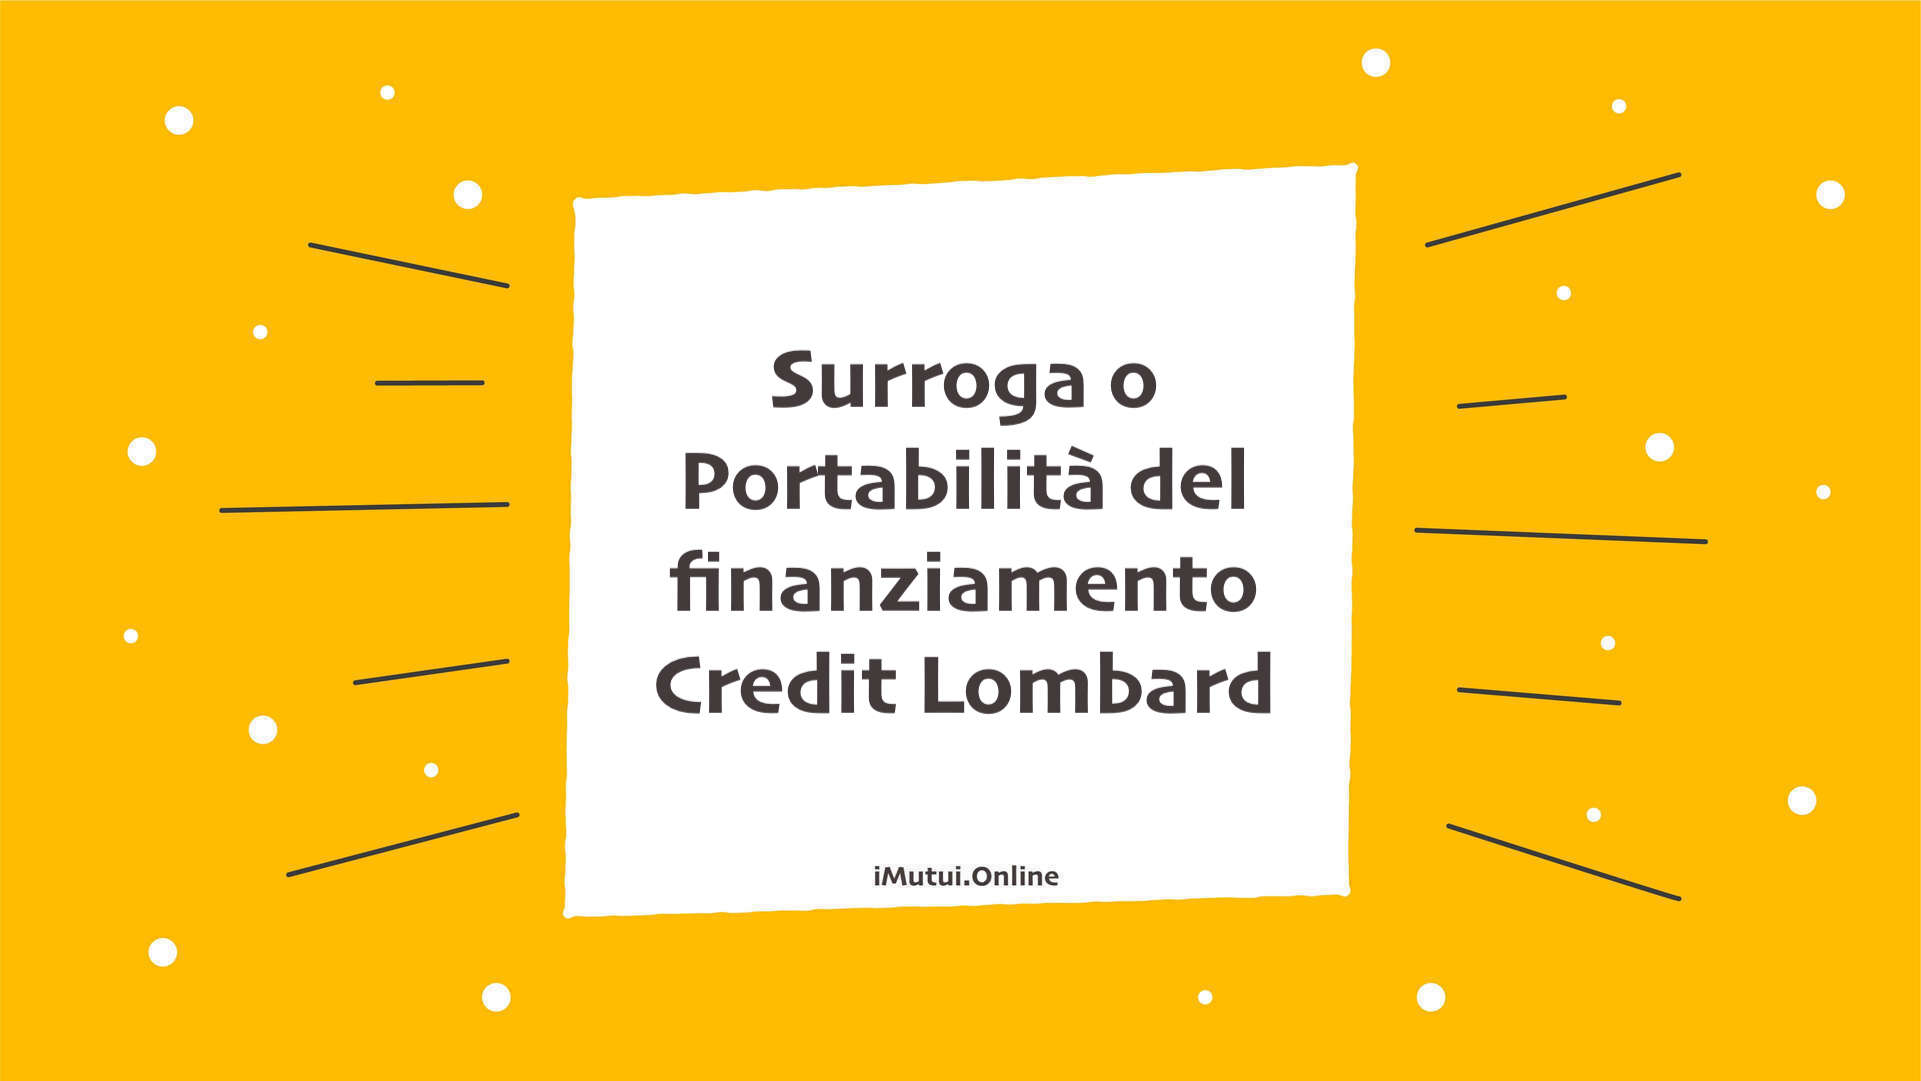 Surroga o Portabilità del finanziamento Credit Lombard